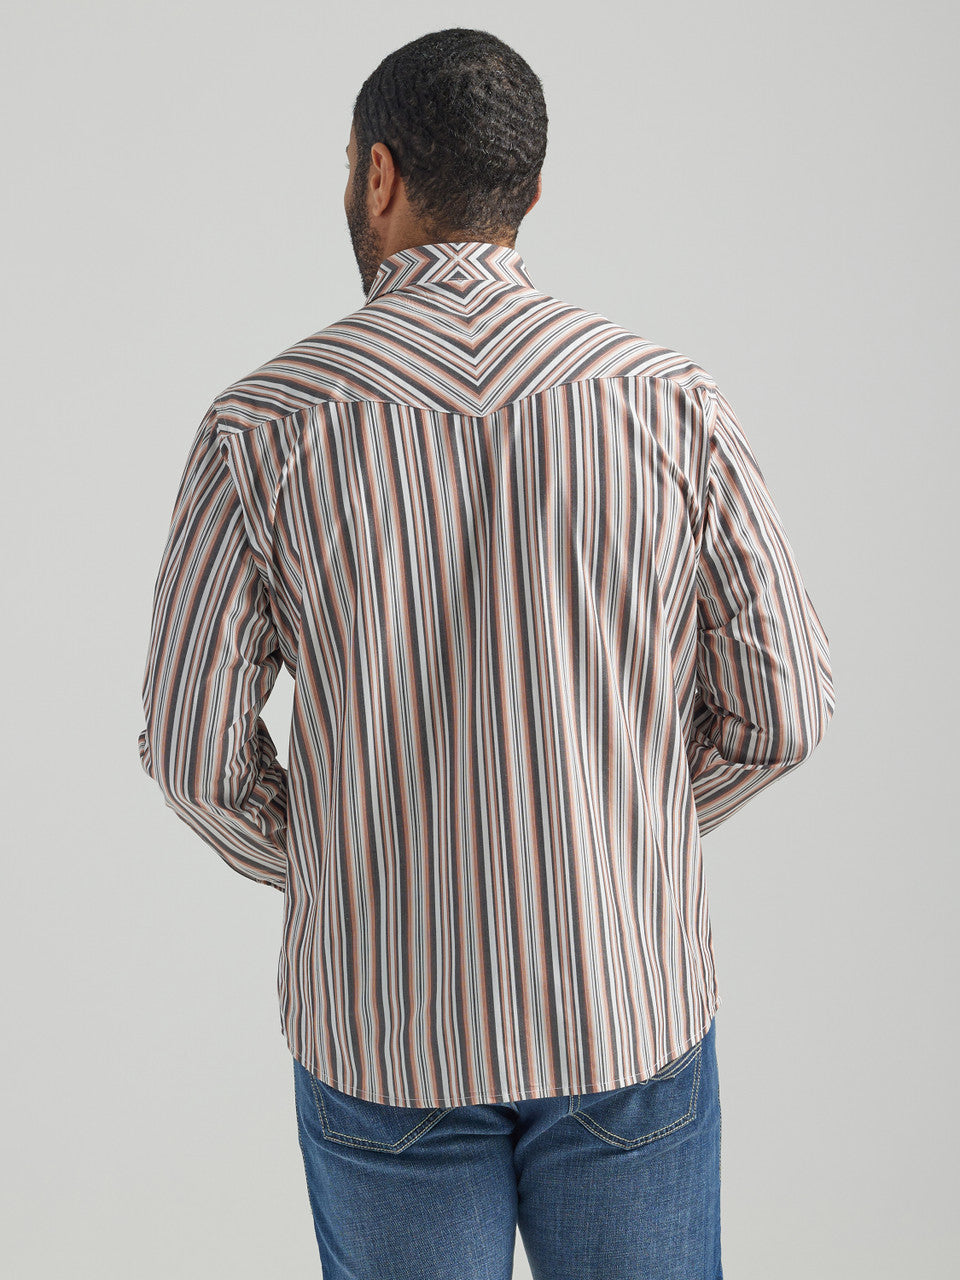 Wrangler Men's Copper Stripe Snap Western Shirt